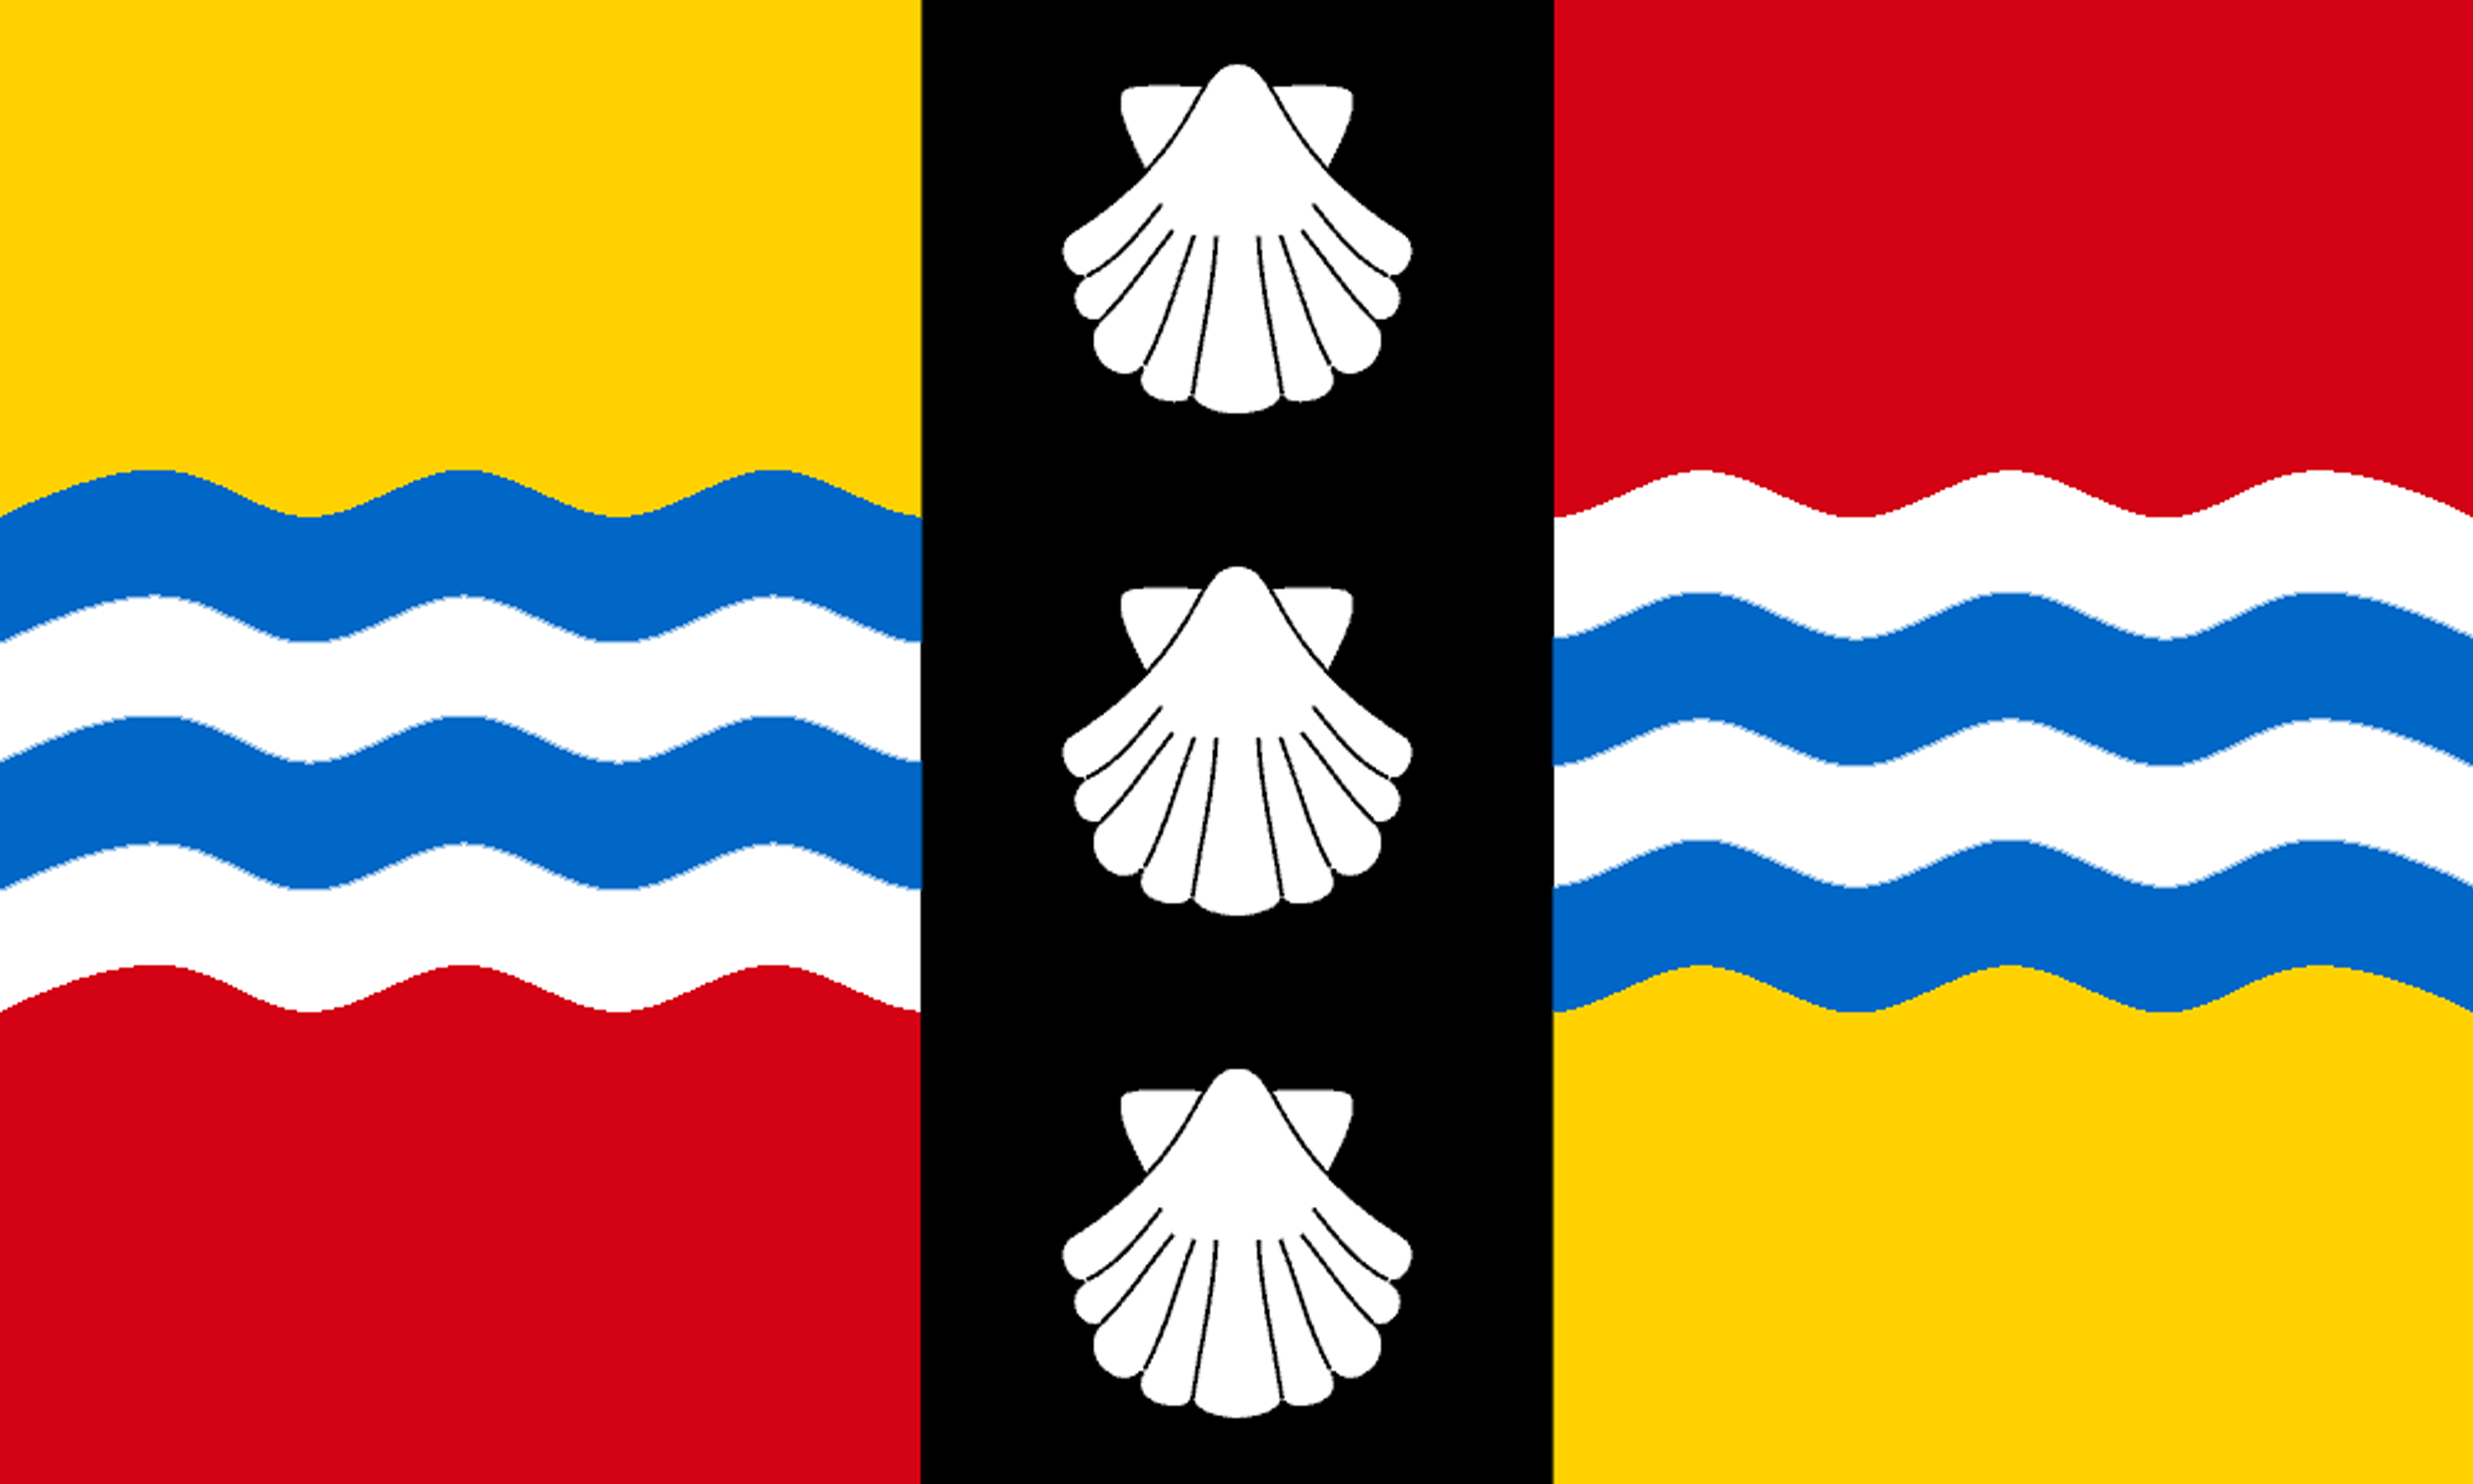 Bedfordshire Flag